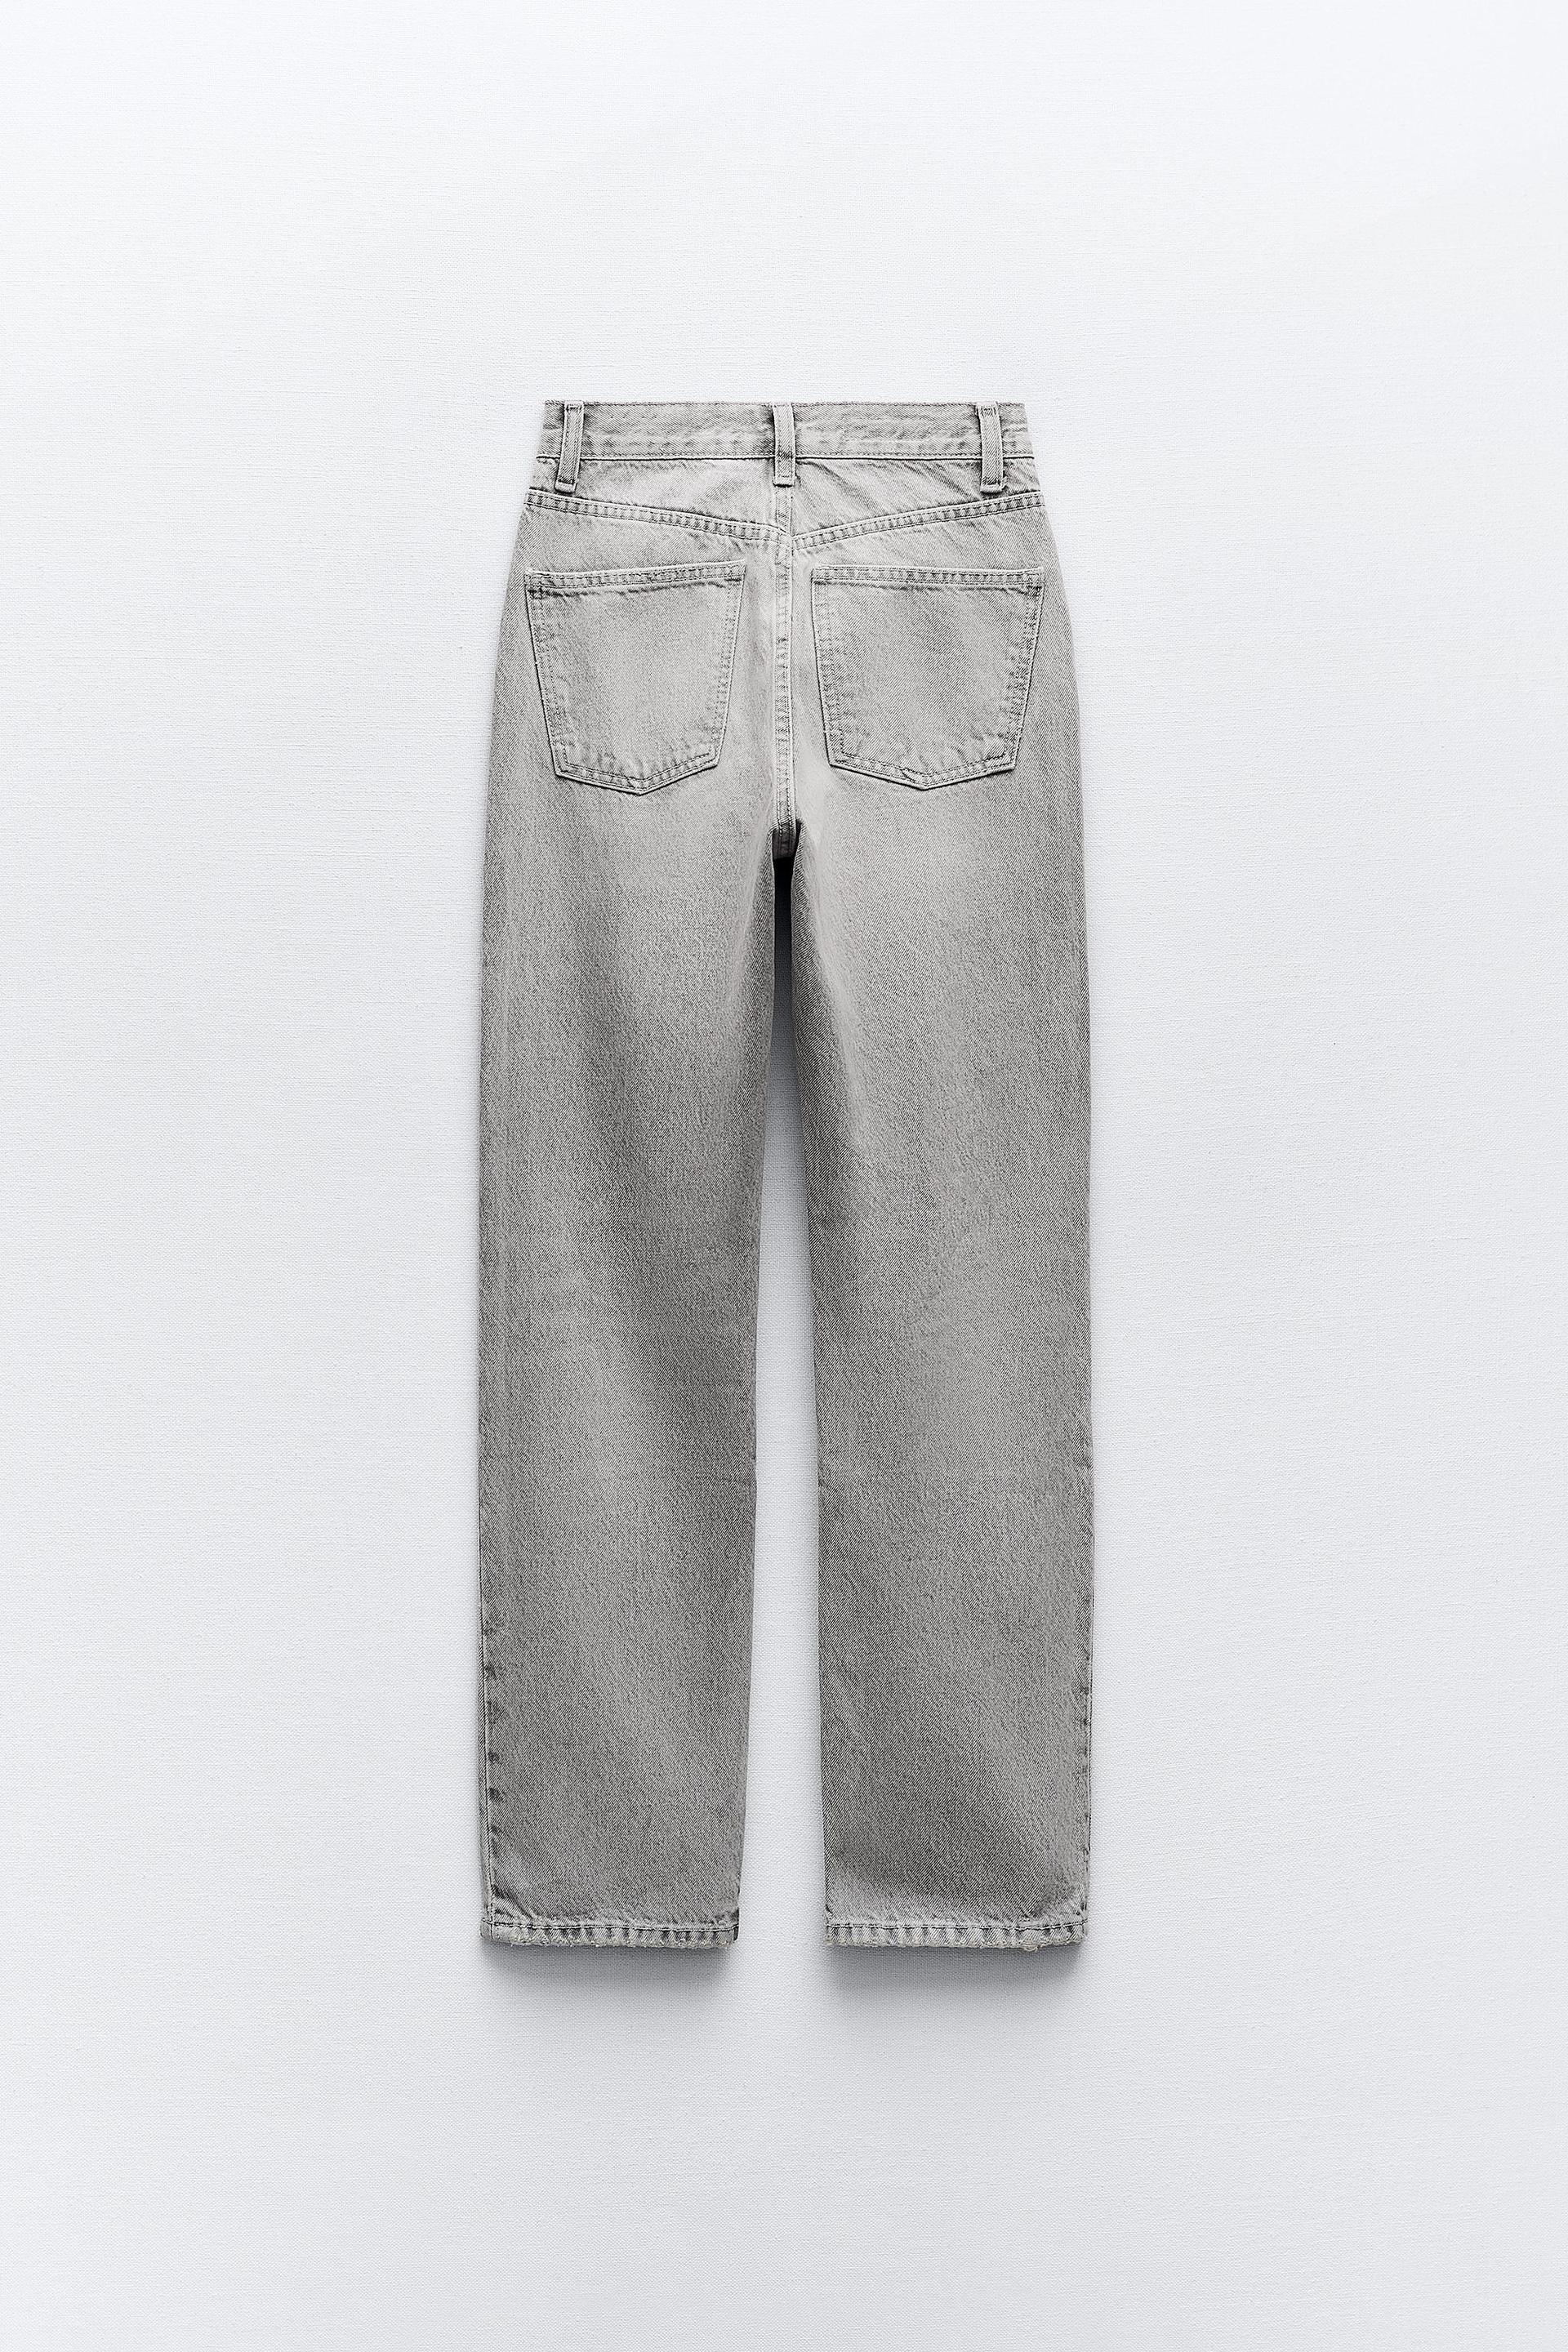 Zara purple jeans 🌟 Price: 2100/- Waist: 29 in Length: 40 in